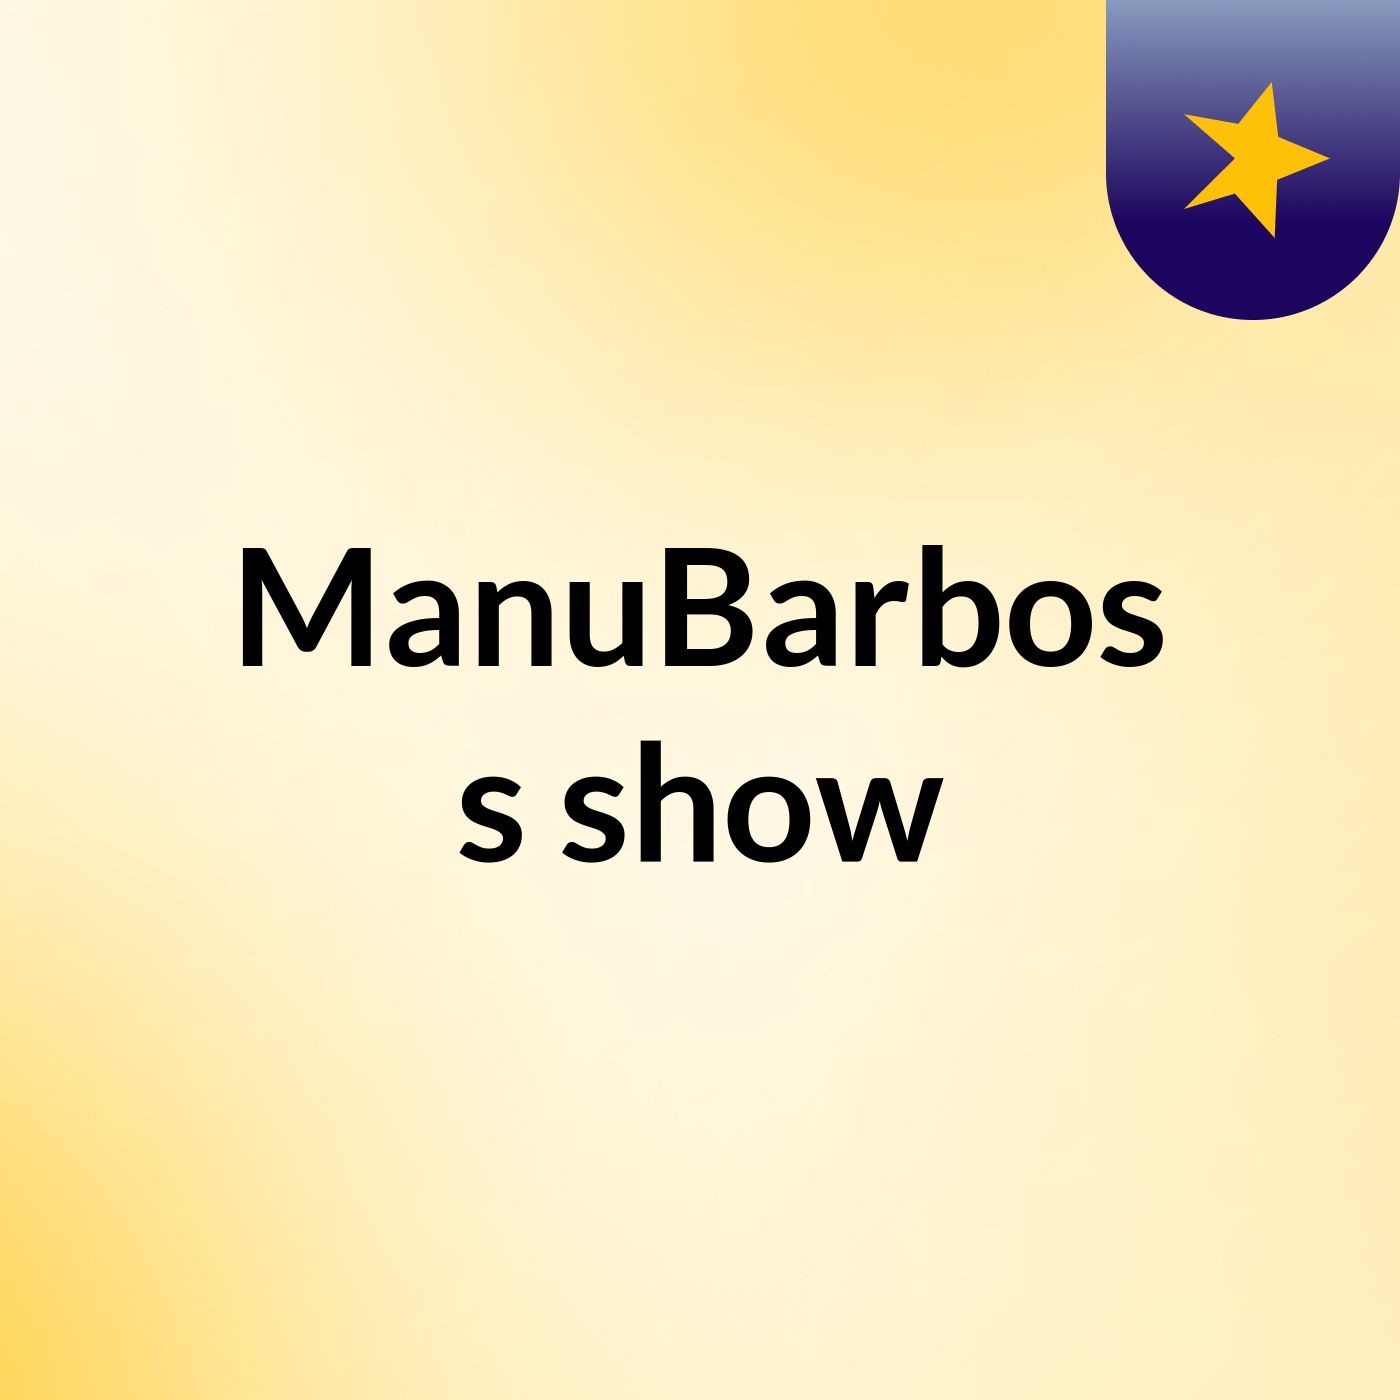 ManuBarbos's show